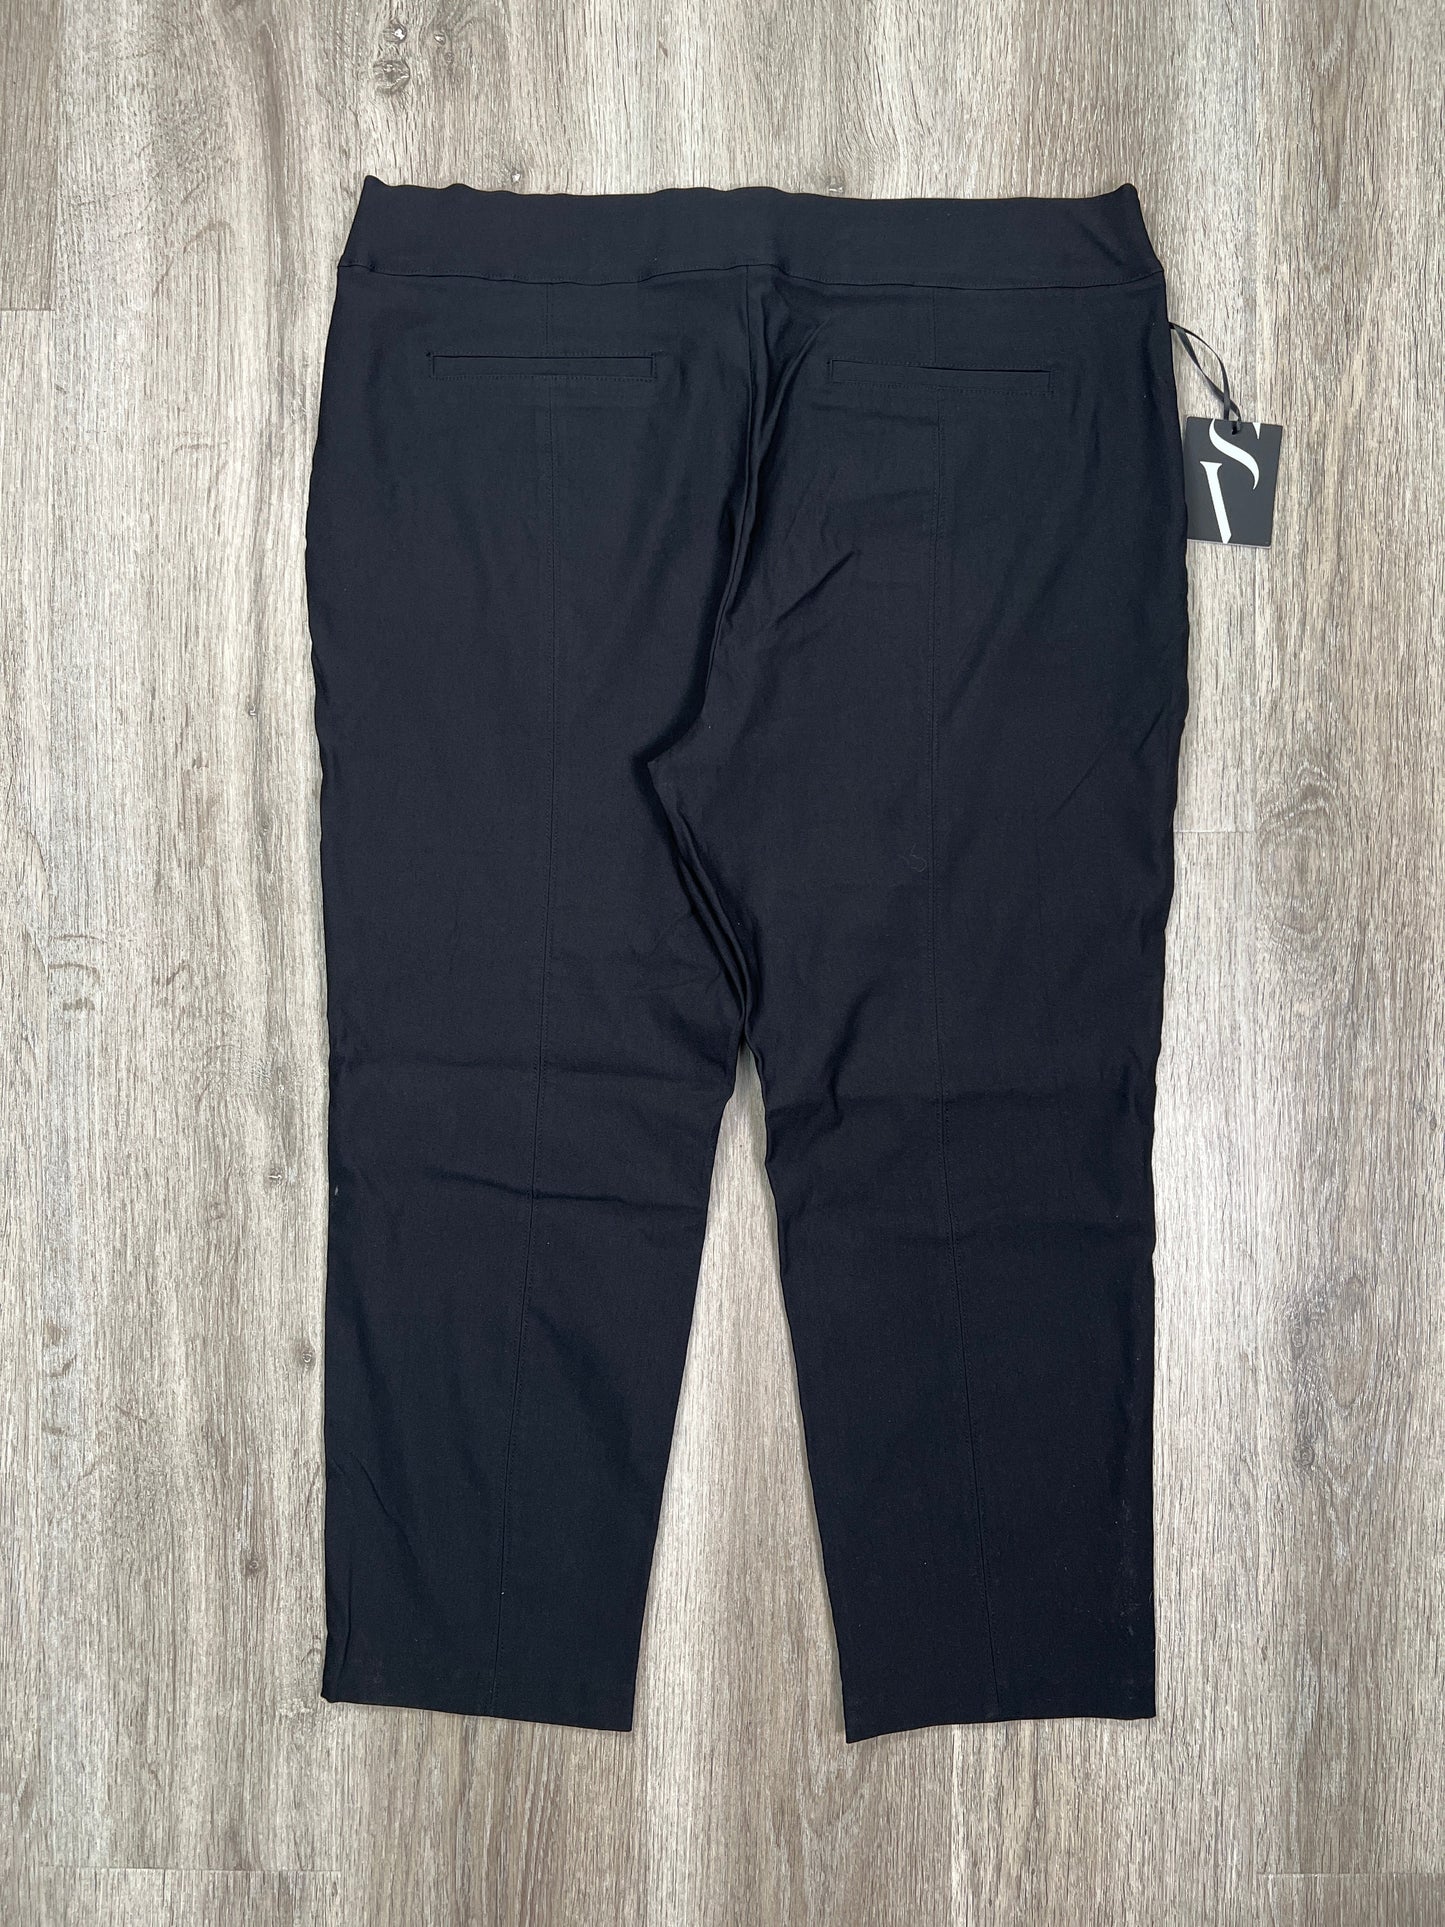 Black Pants Cropped Simply Vera, Size Petite   Xl